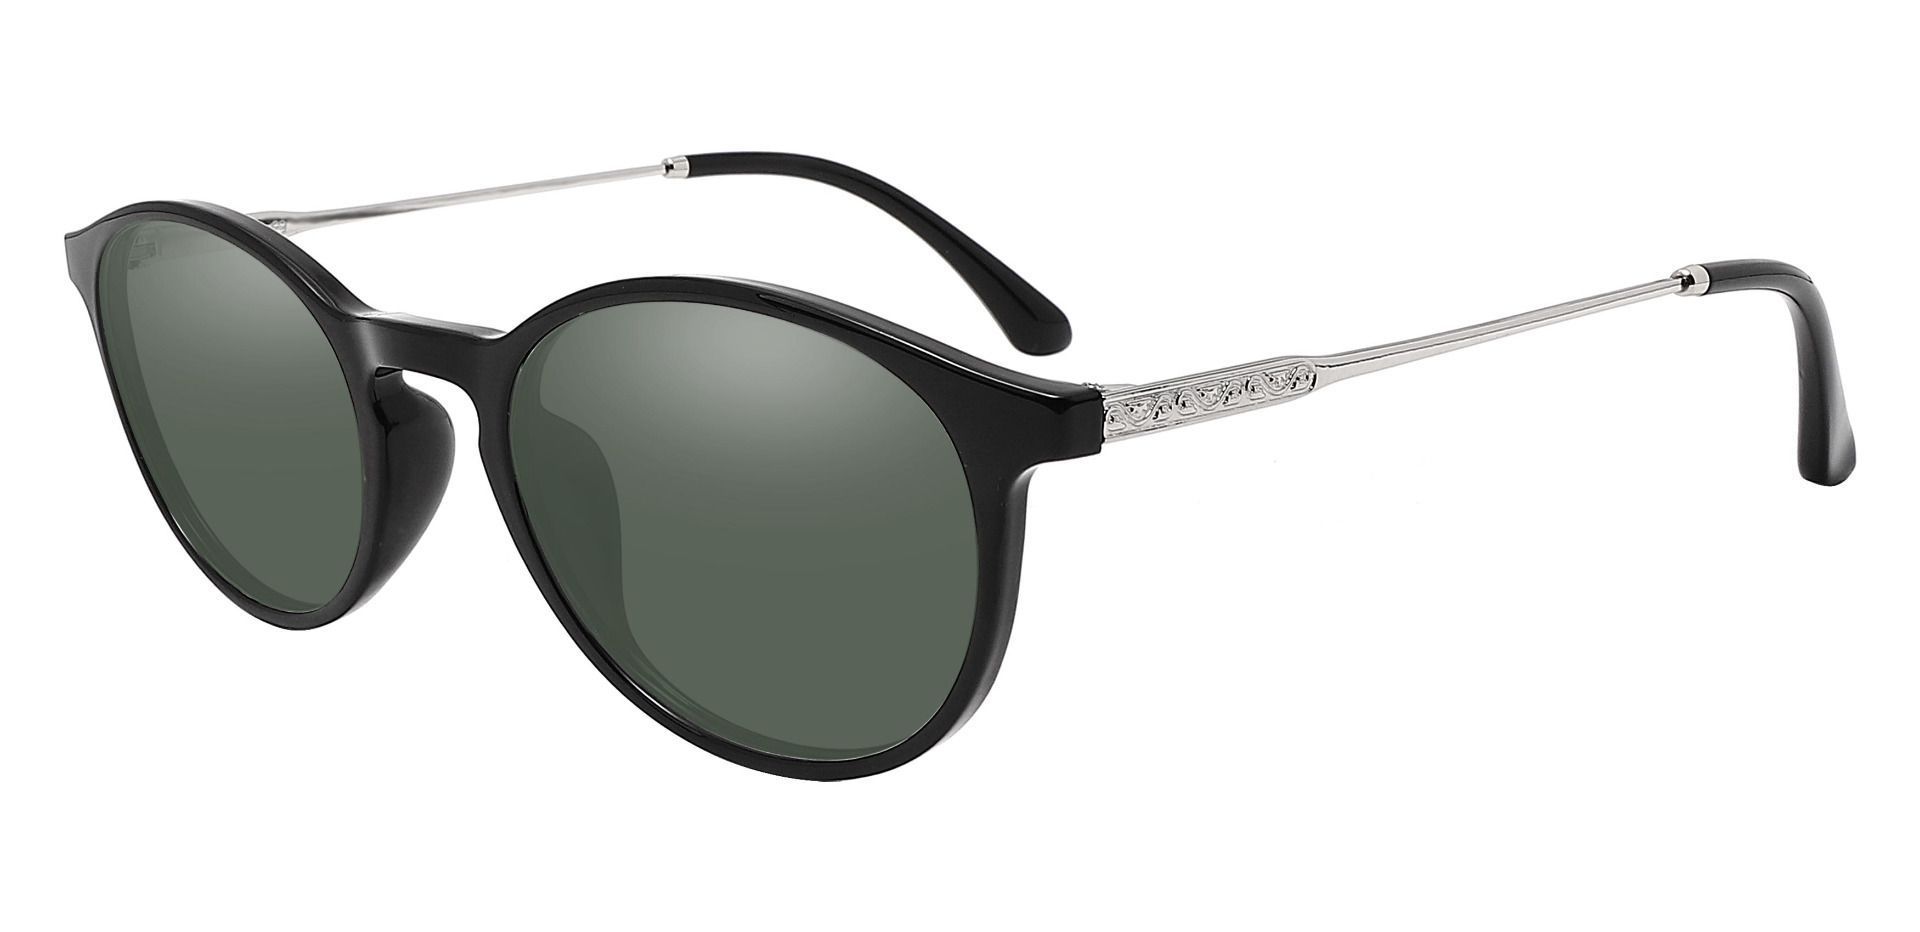 Felton Oval Prescription Sunglasses - Black Frame With Green Lenses